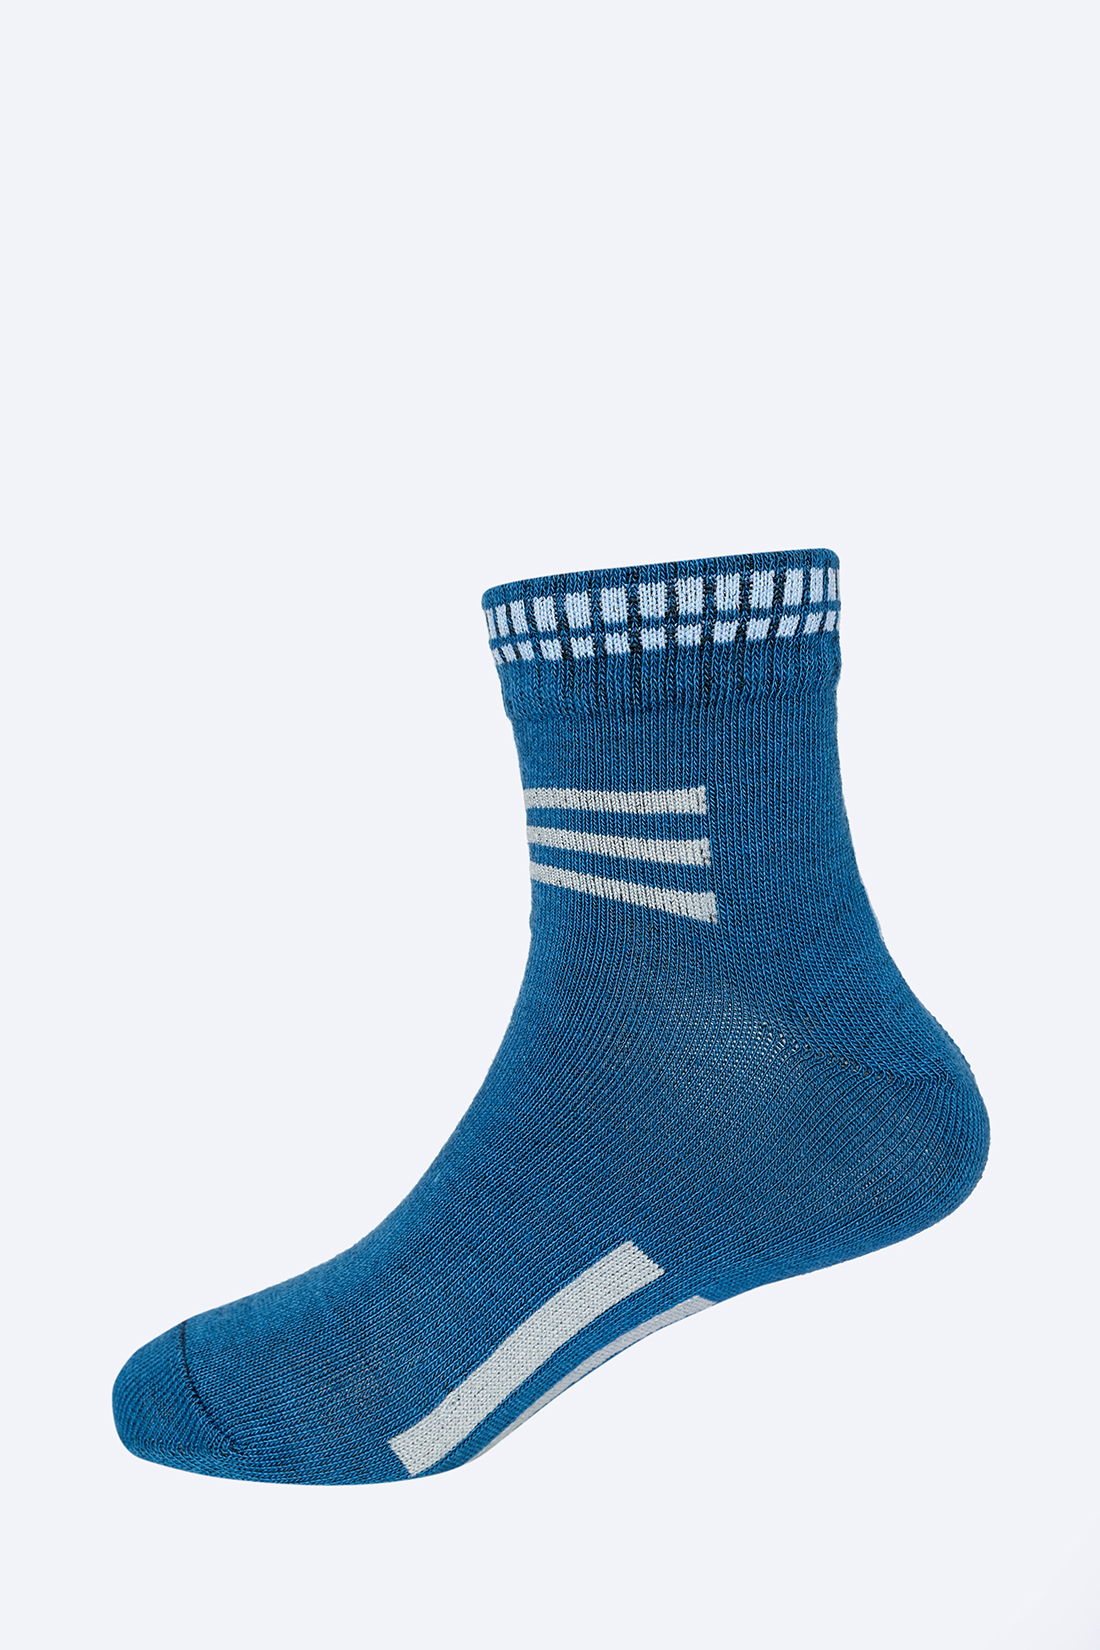 Носки для мальчика (арт. baon BK899502), размер 29/31, цвет синий